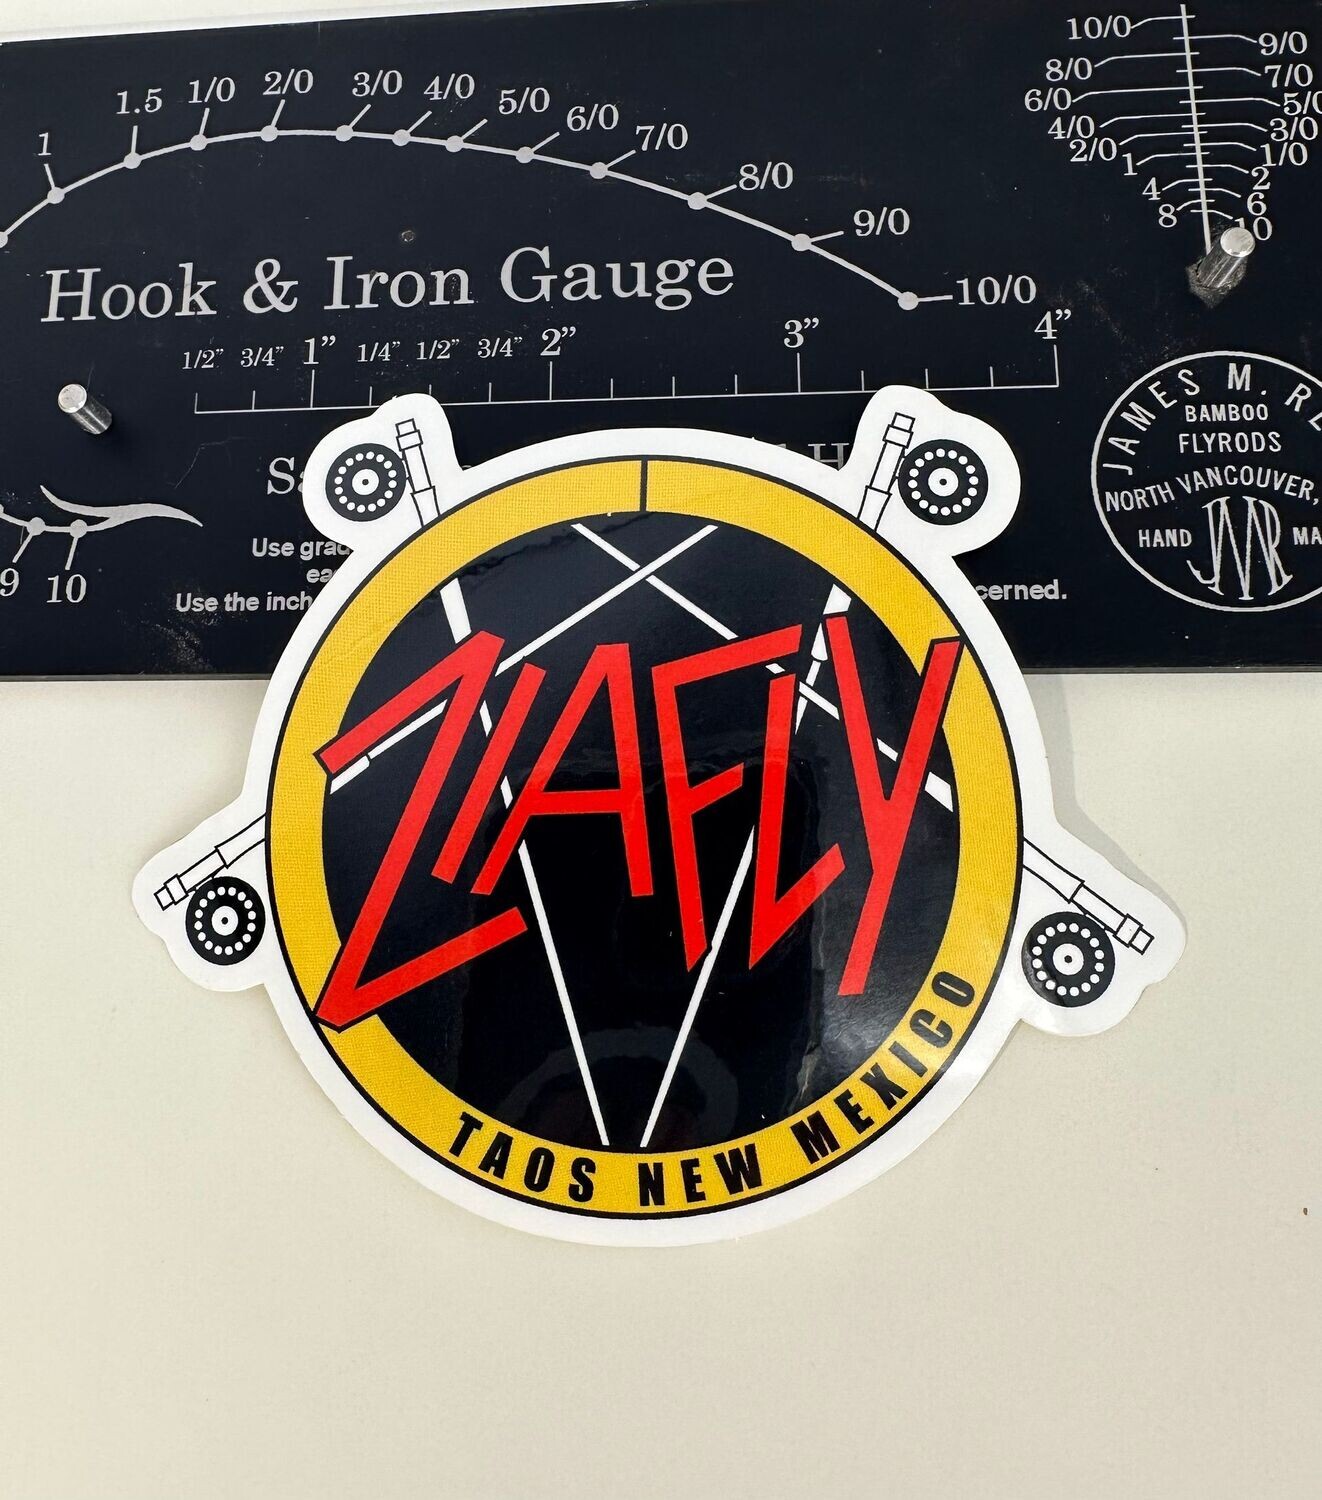 ZiaFly sticker Slayer logo